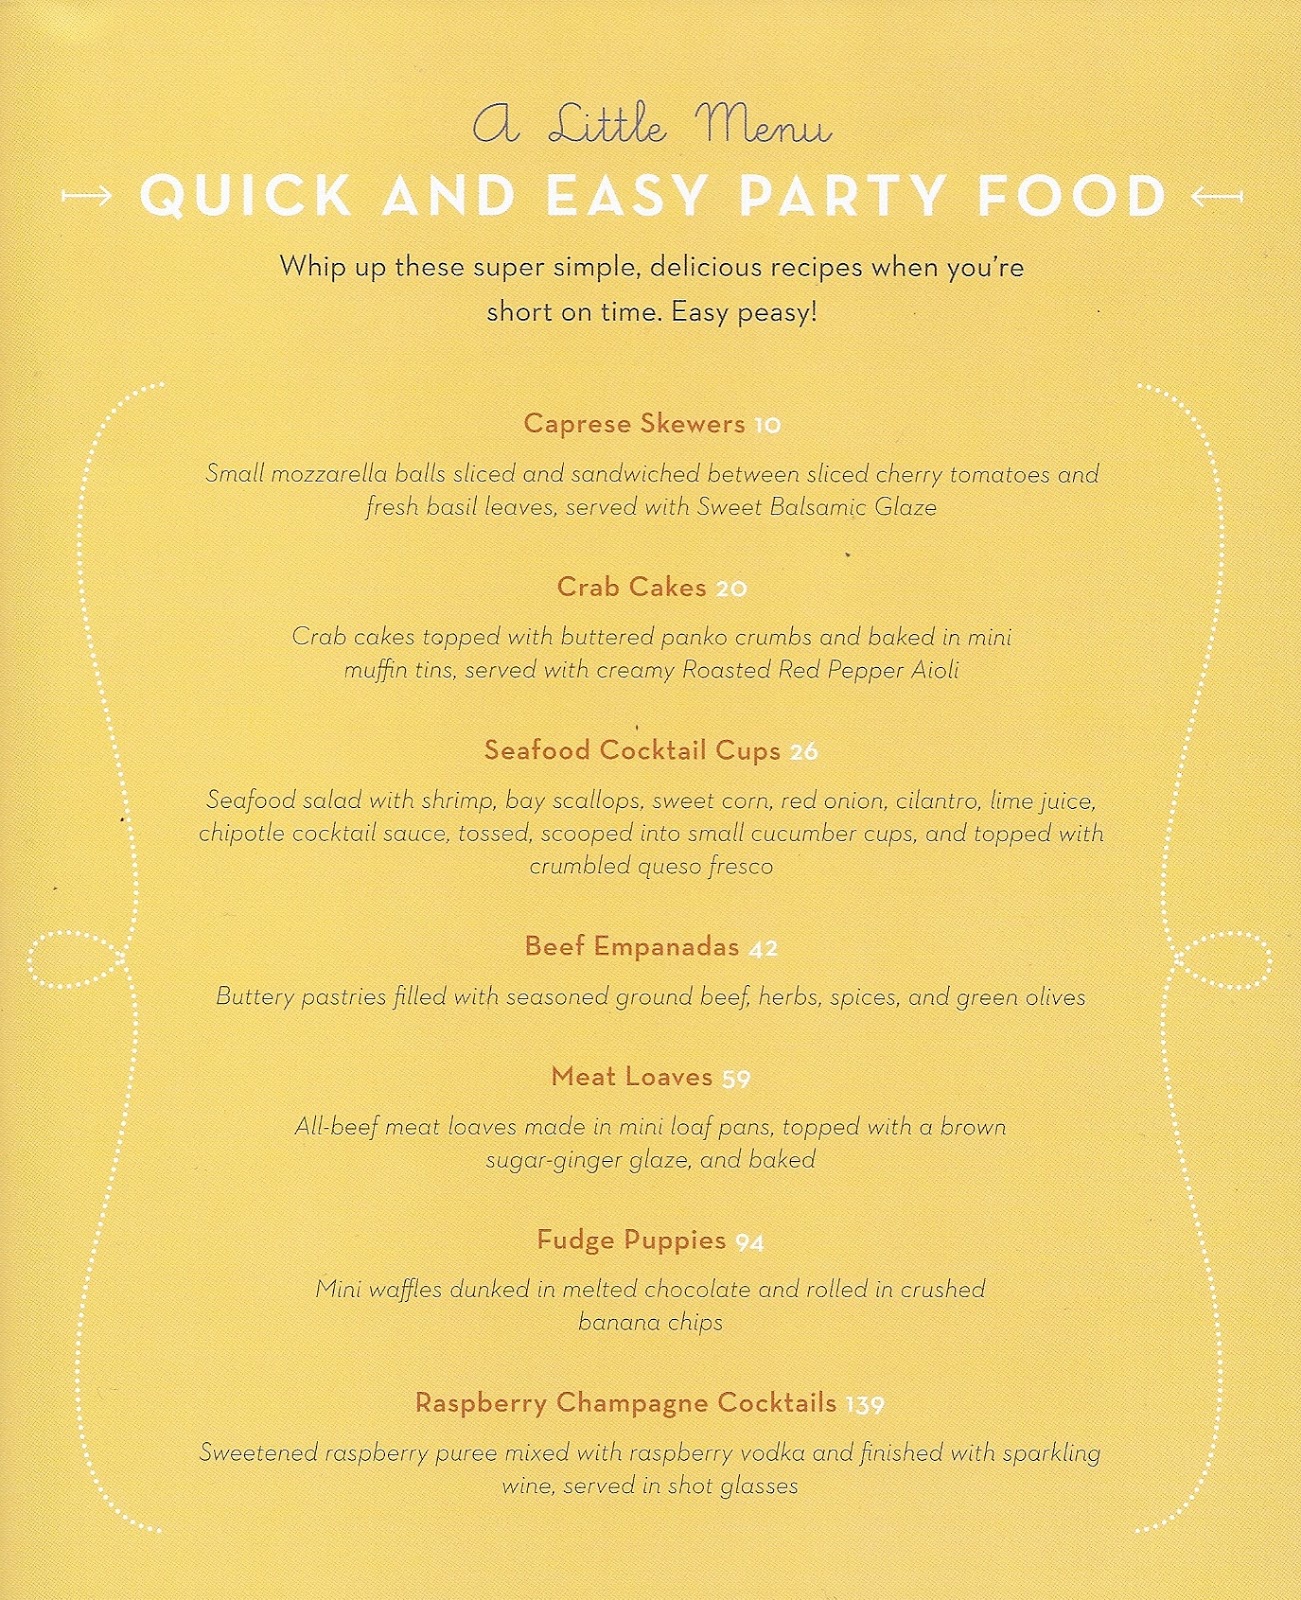 http://1.bp.blogspot.com/-bom5x36VovM/UNuX4M2cDbI/AAAAAAAAUa0/adwaNUgsjCk/s1600/tiny+food+party+menu.jpg